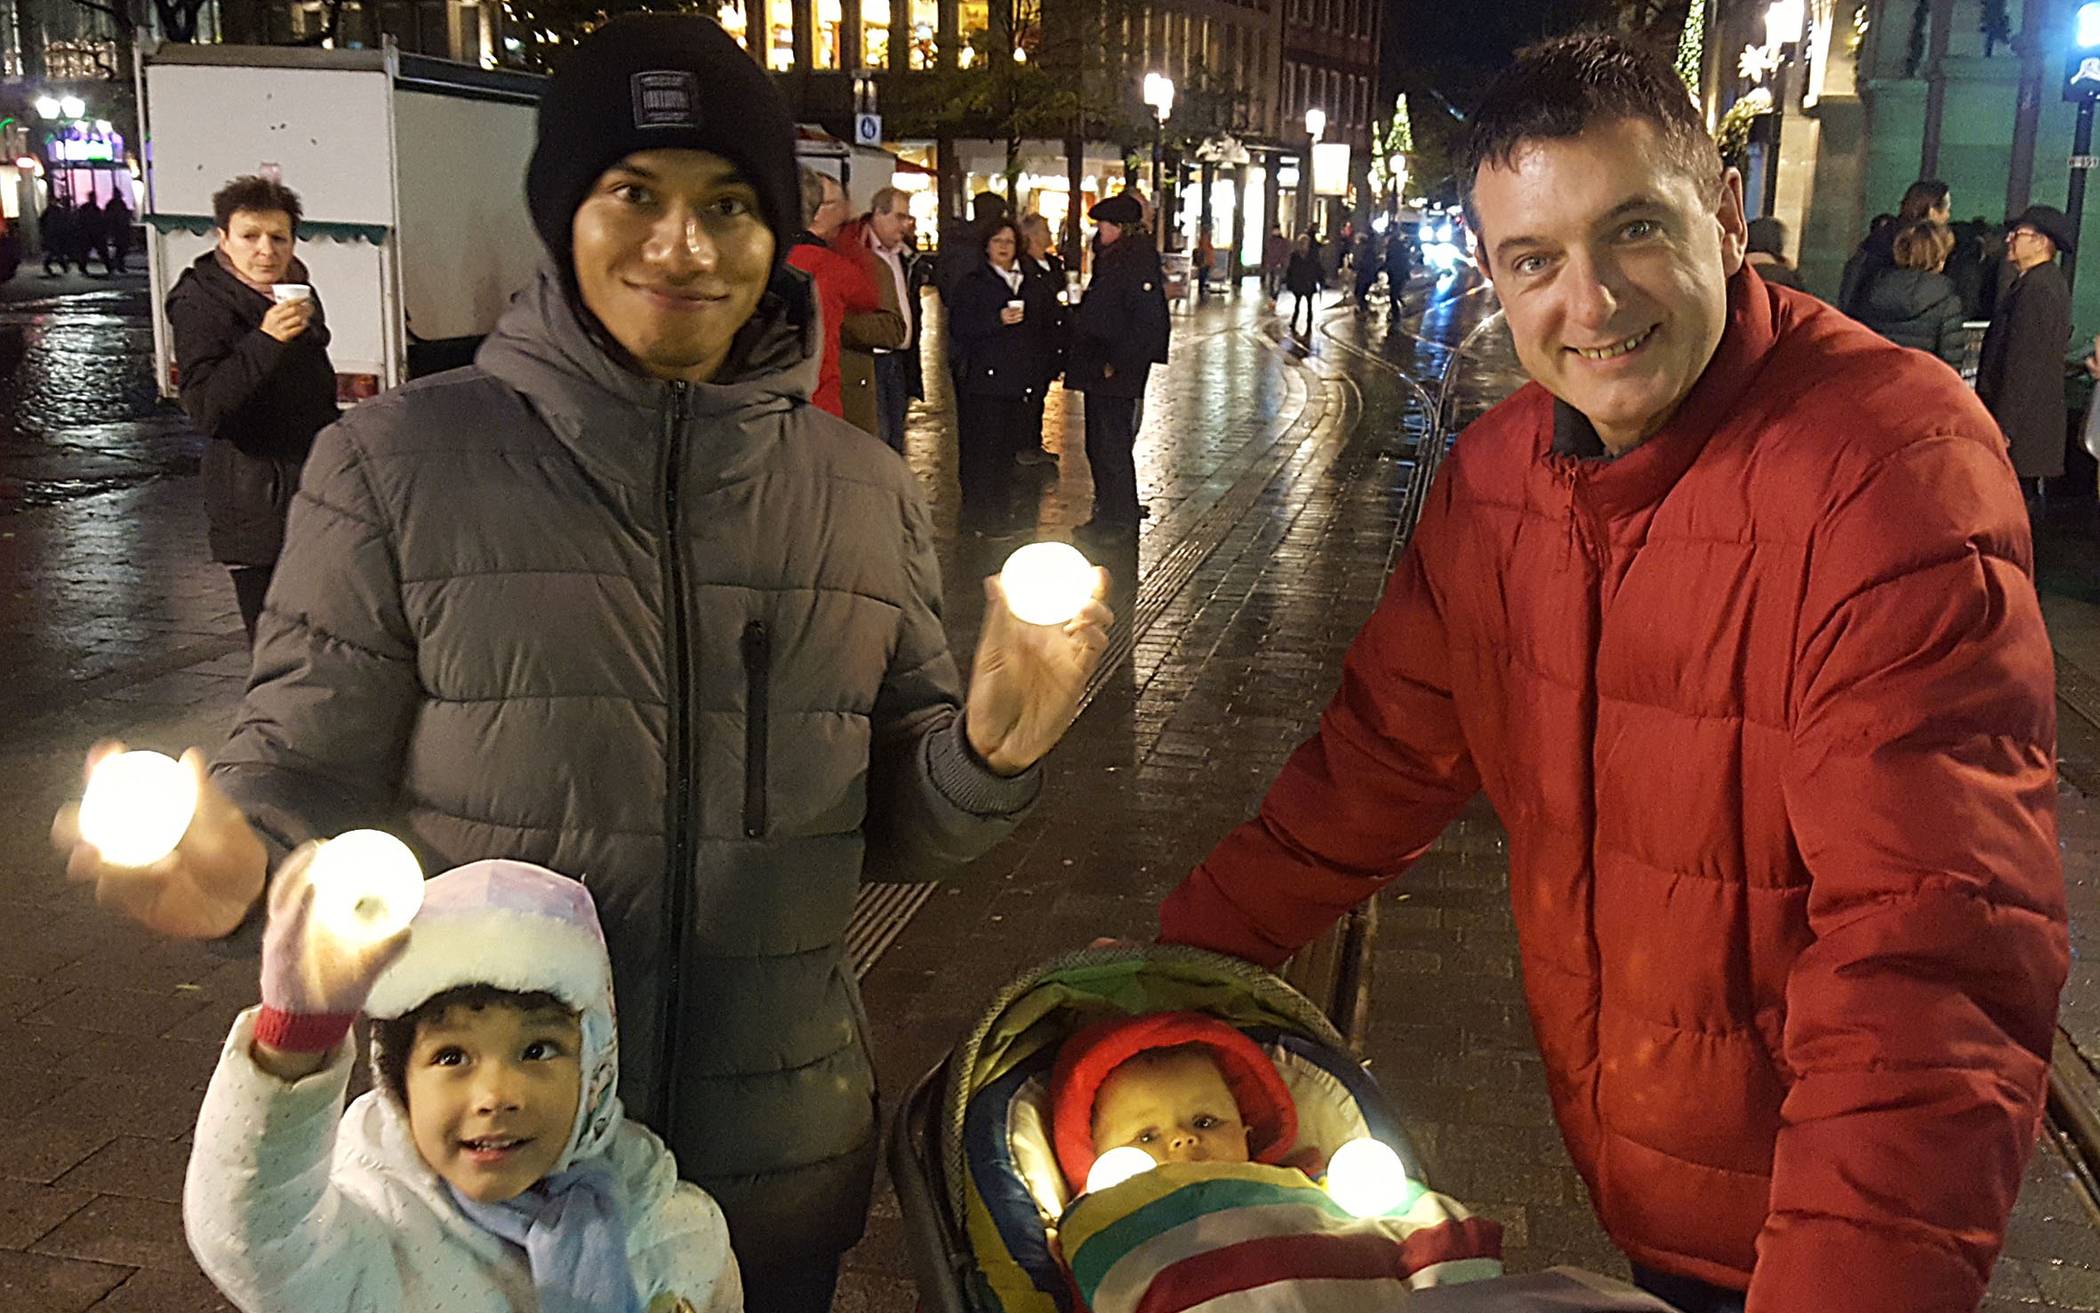  Diese Familie freut sich über LED-Schneebälle, am 17. Dezember werden die leuchtenden Kugeln erneut in der City kostenlos verteilt.  